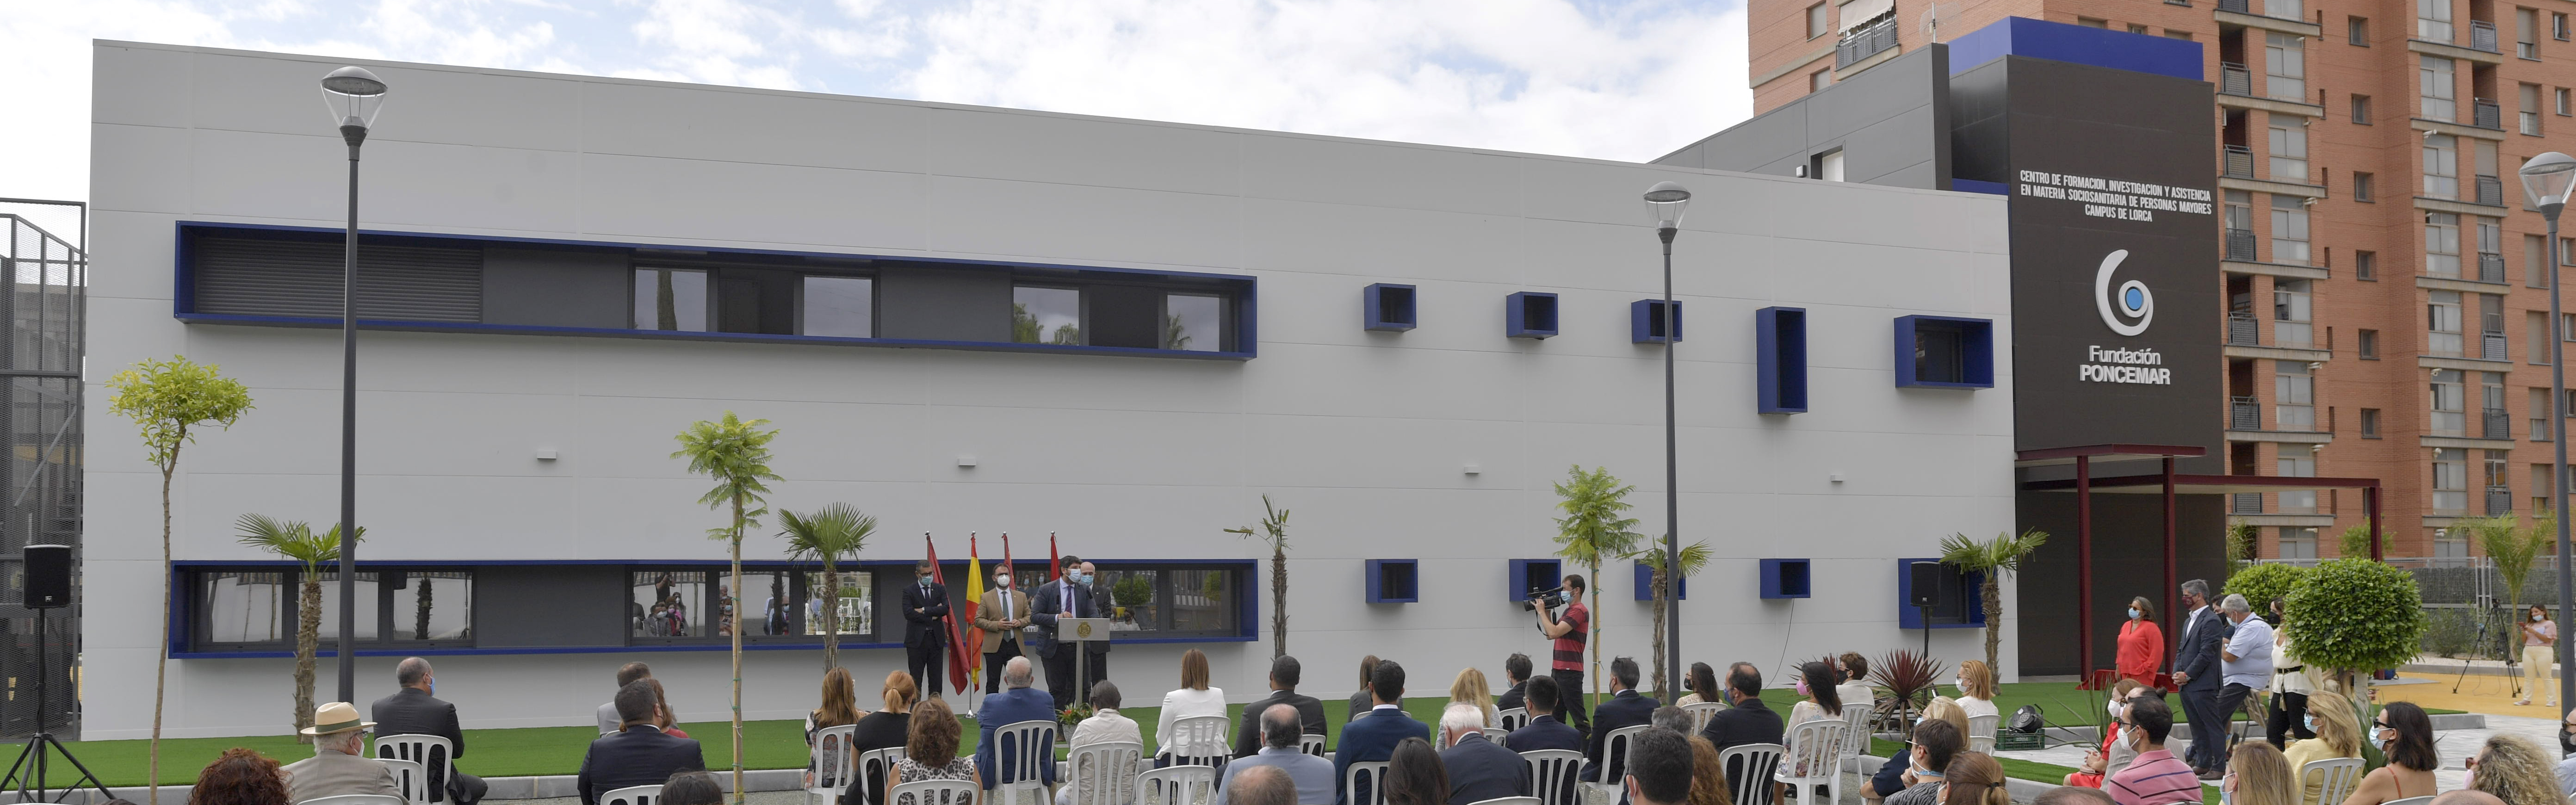 La Universidad de Murcia y la Fundación Poncemar inauguran el Centro de Formación, Investigación y Asistencia sociosanitaria a personas mayores del Campus de Lorca